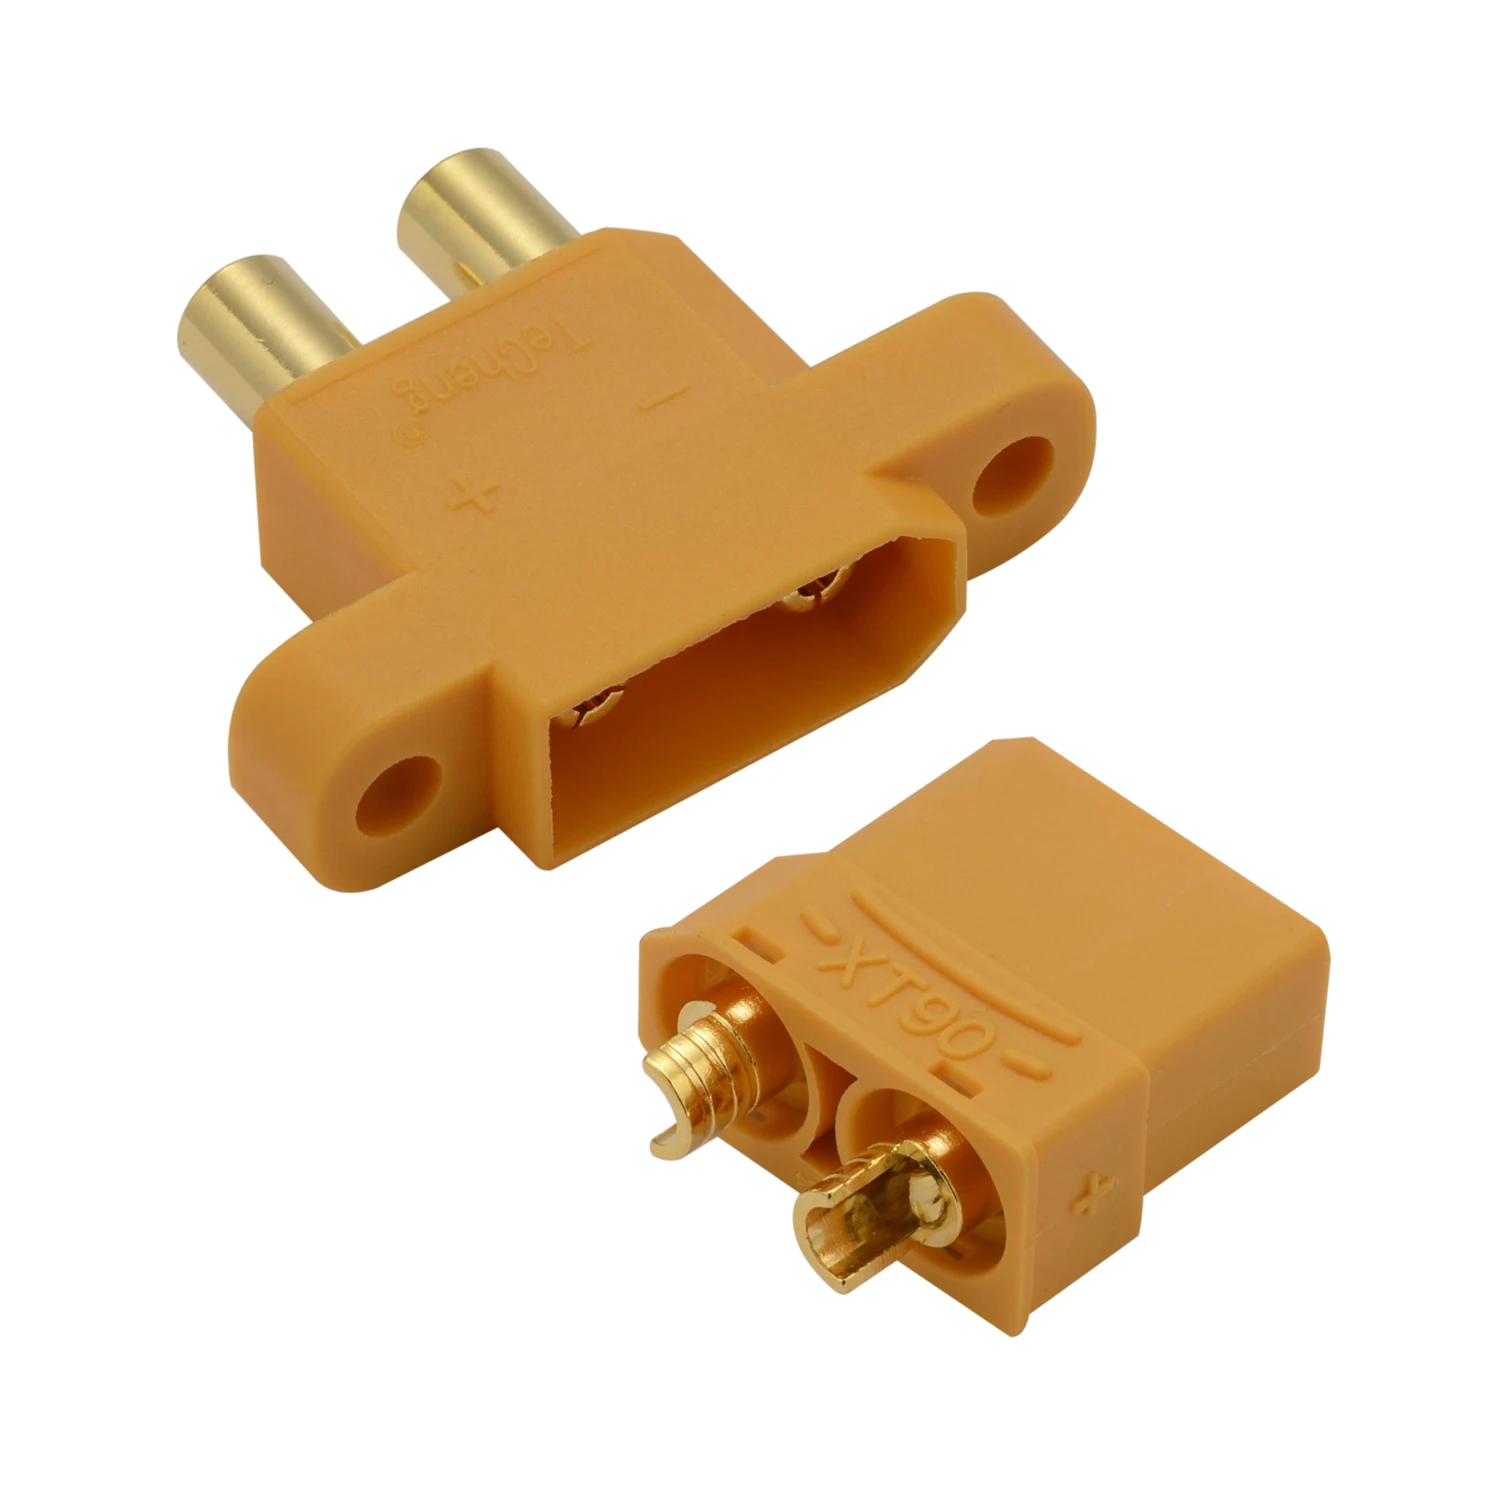 Details about   Series Of Connectors EC3-5 XT90 Mini Deans Jst Bec Available Diversi Models RC 